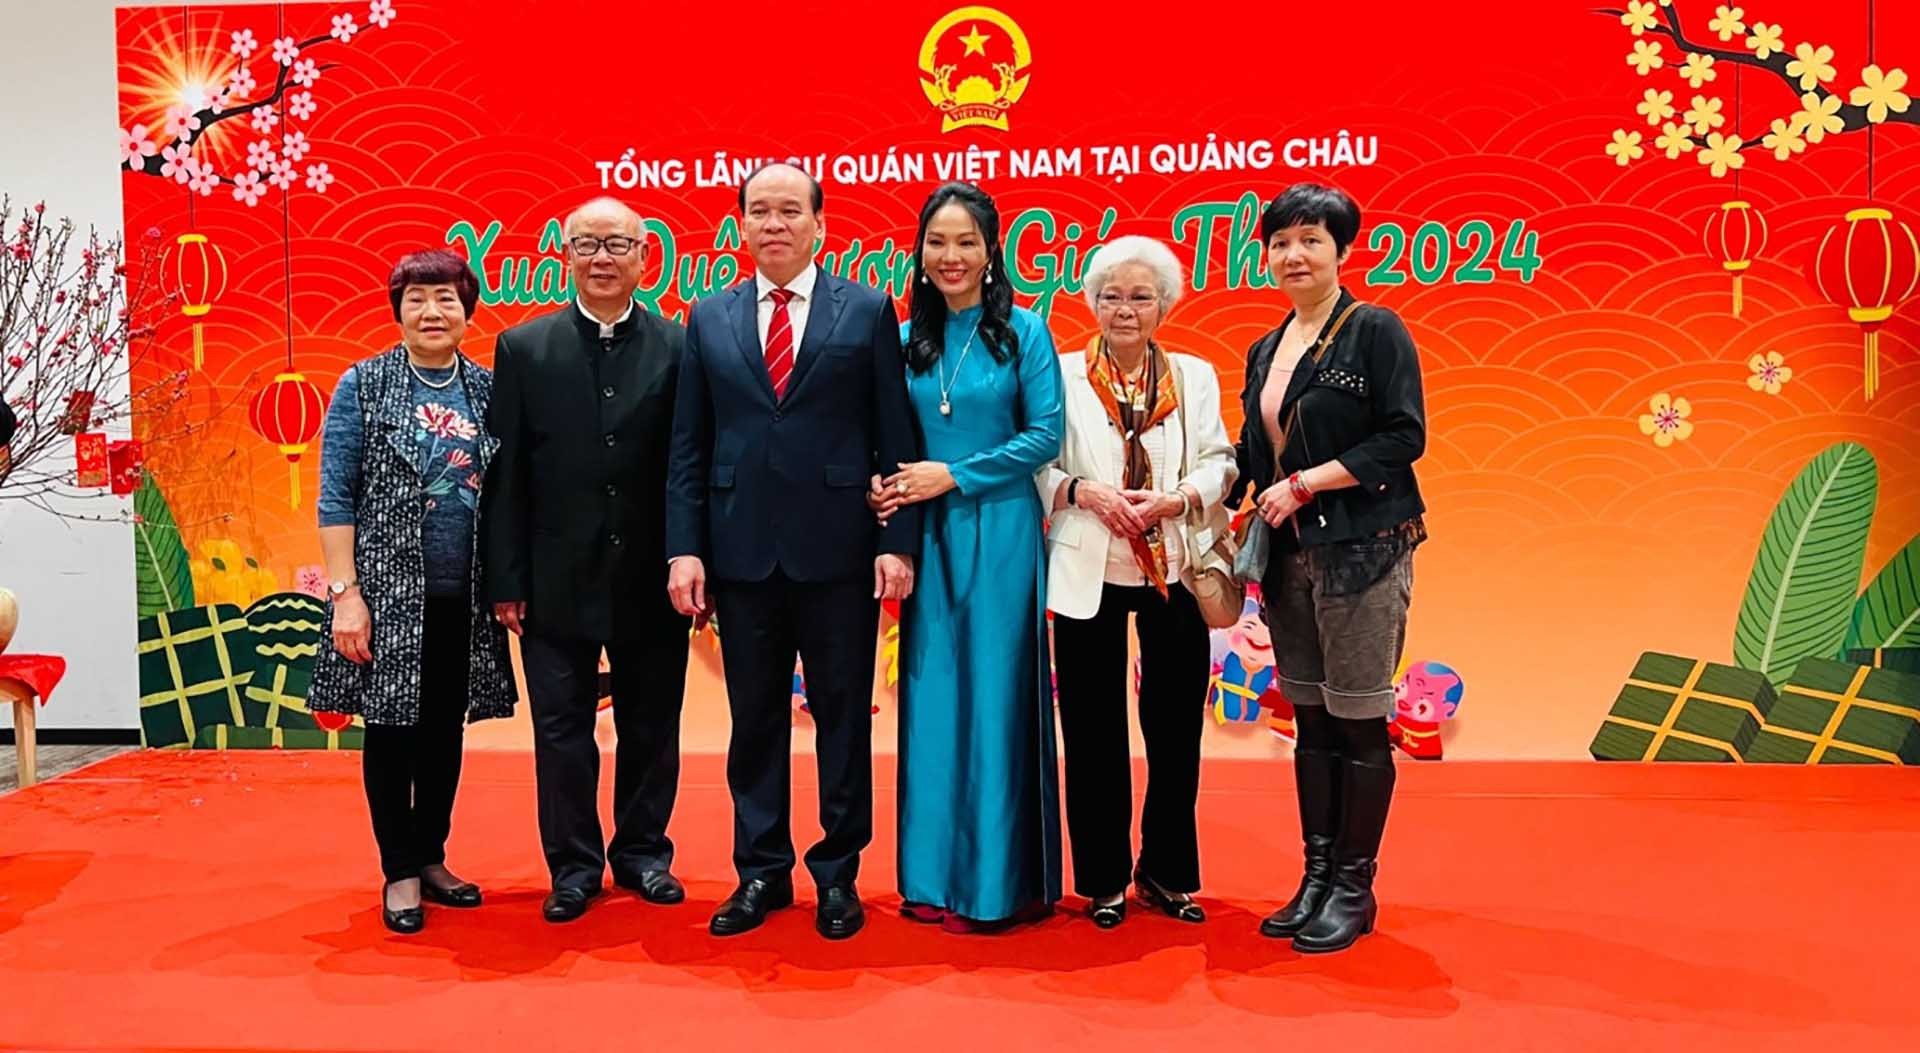 Tổng lãnh sự quán Việt Nam tại Quảng Châu tổ chức gặp gỡ Xuân Giáp Thìn 2024